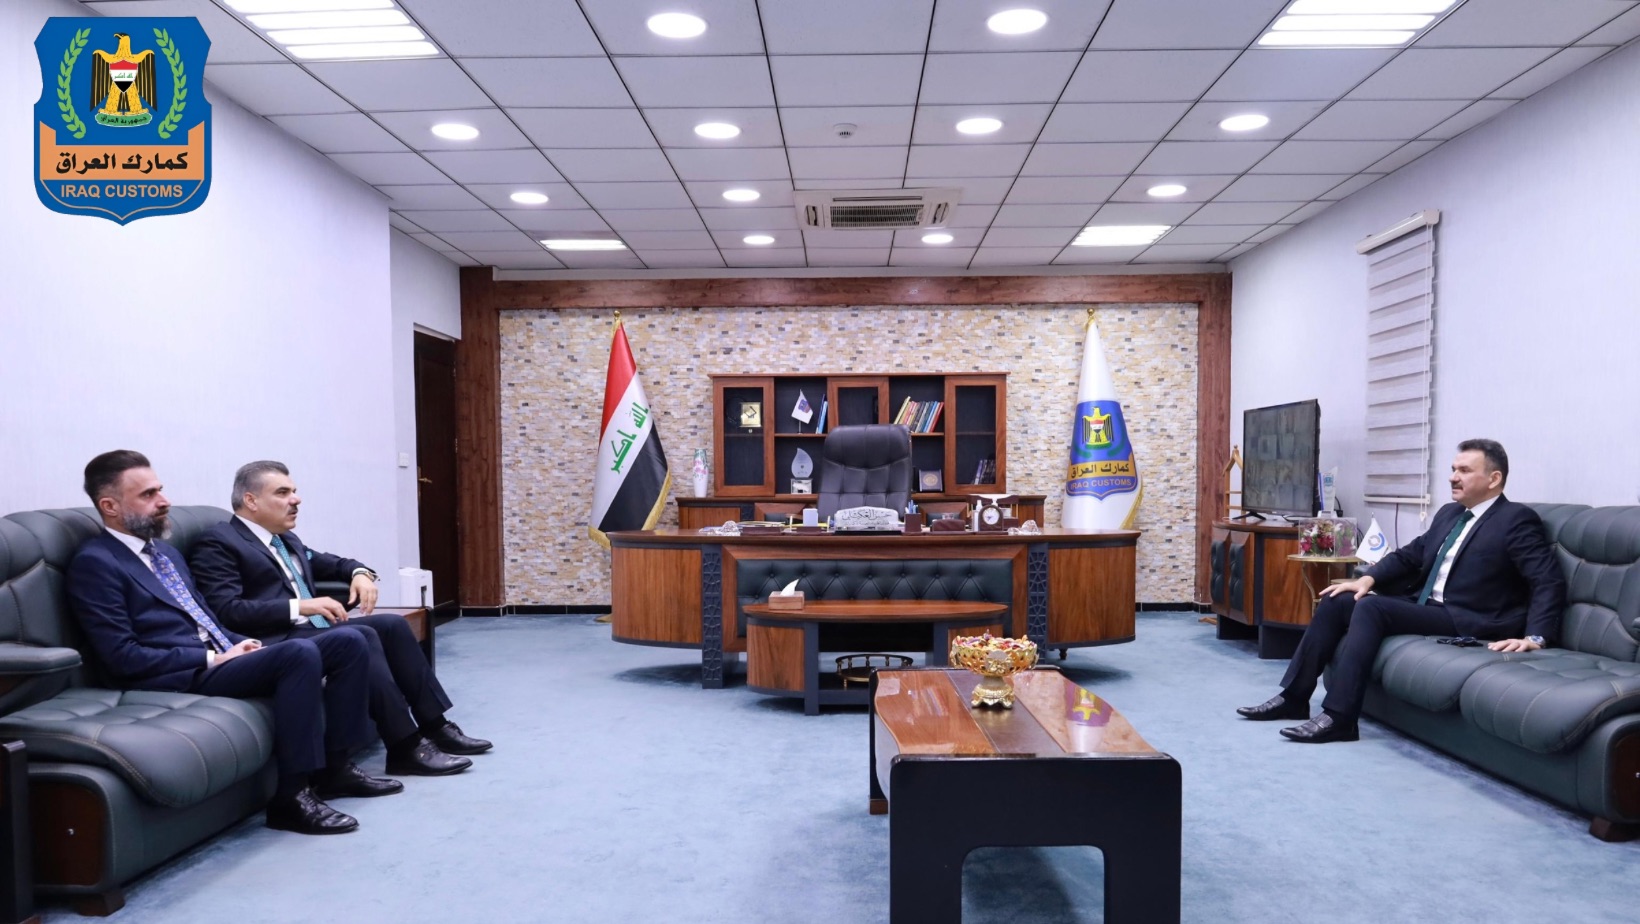 ⭕ مدير عام الهيئة العامة للكمارك يستقبل معالي رئيس ممثلية حكومة اقليم كردستان في مقر الهيئة.